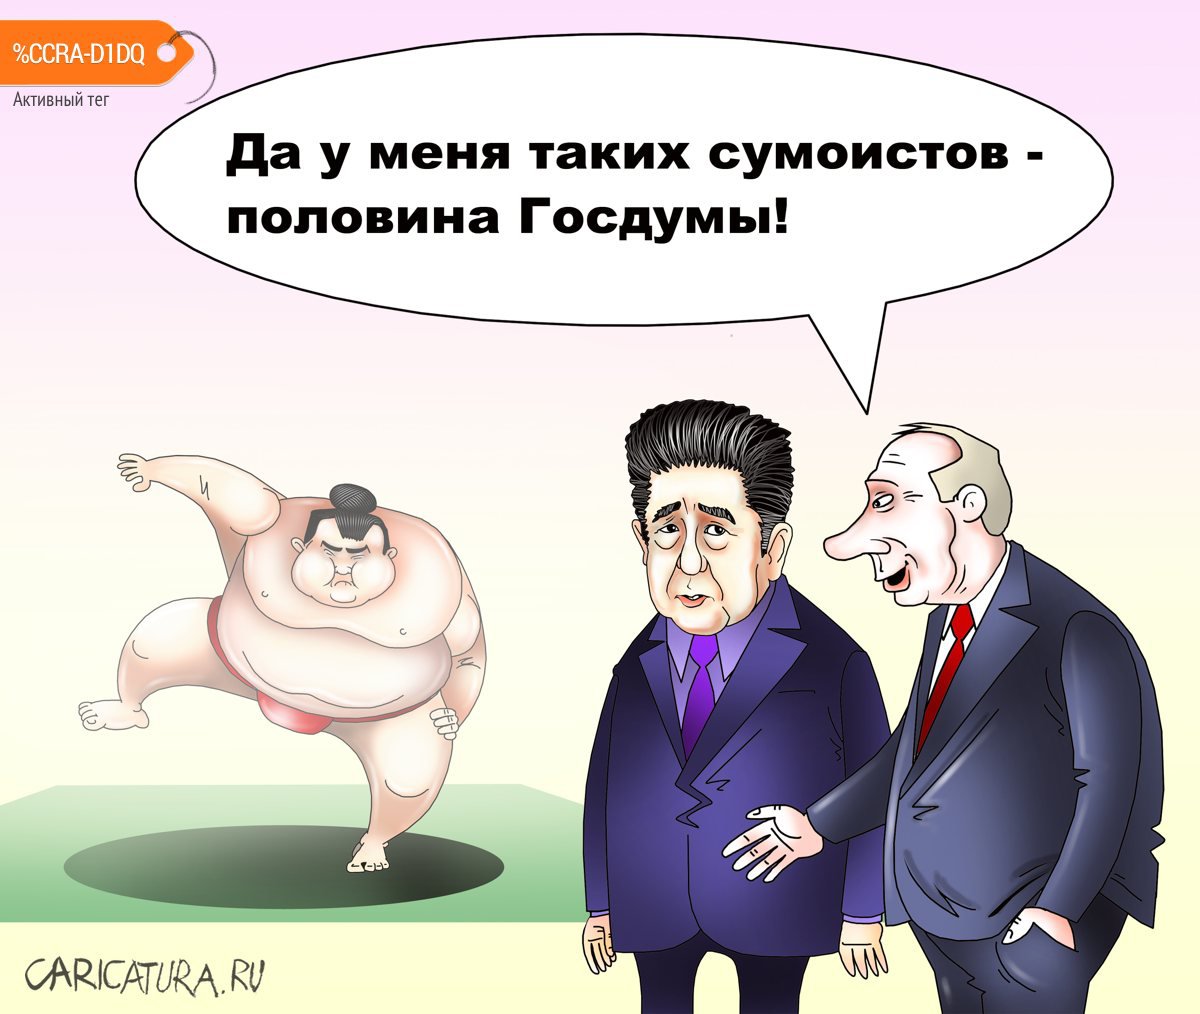 Карикатура "Почему российская элита стремится в "бойцовский", Сергей Корсун